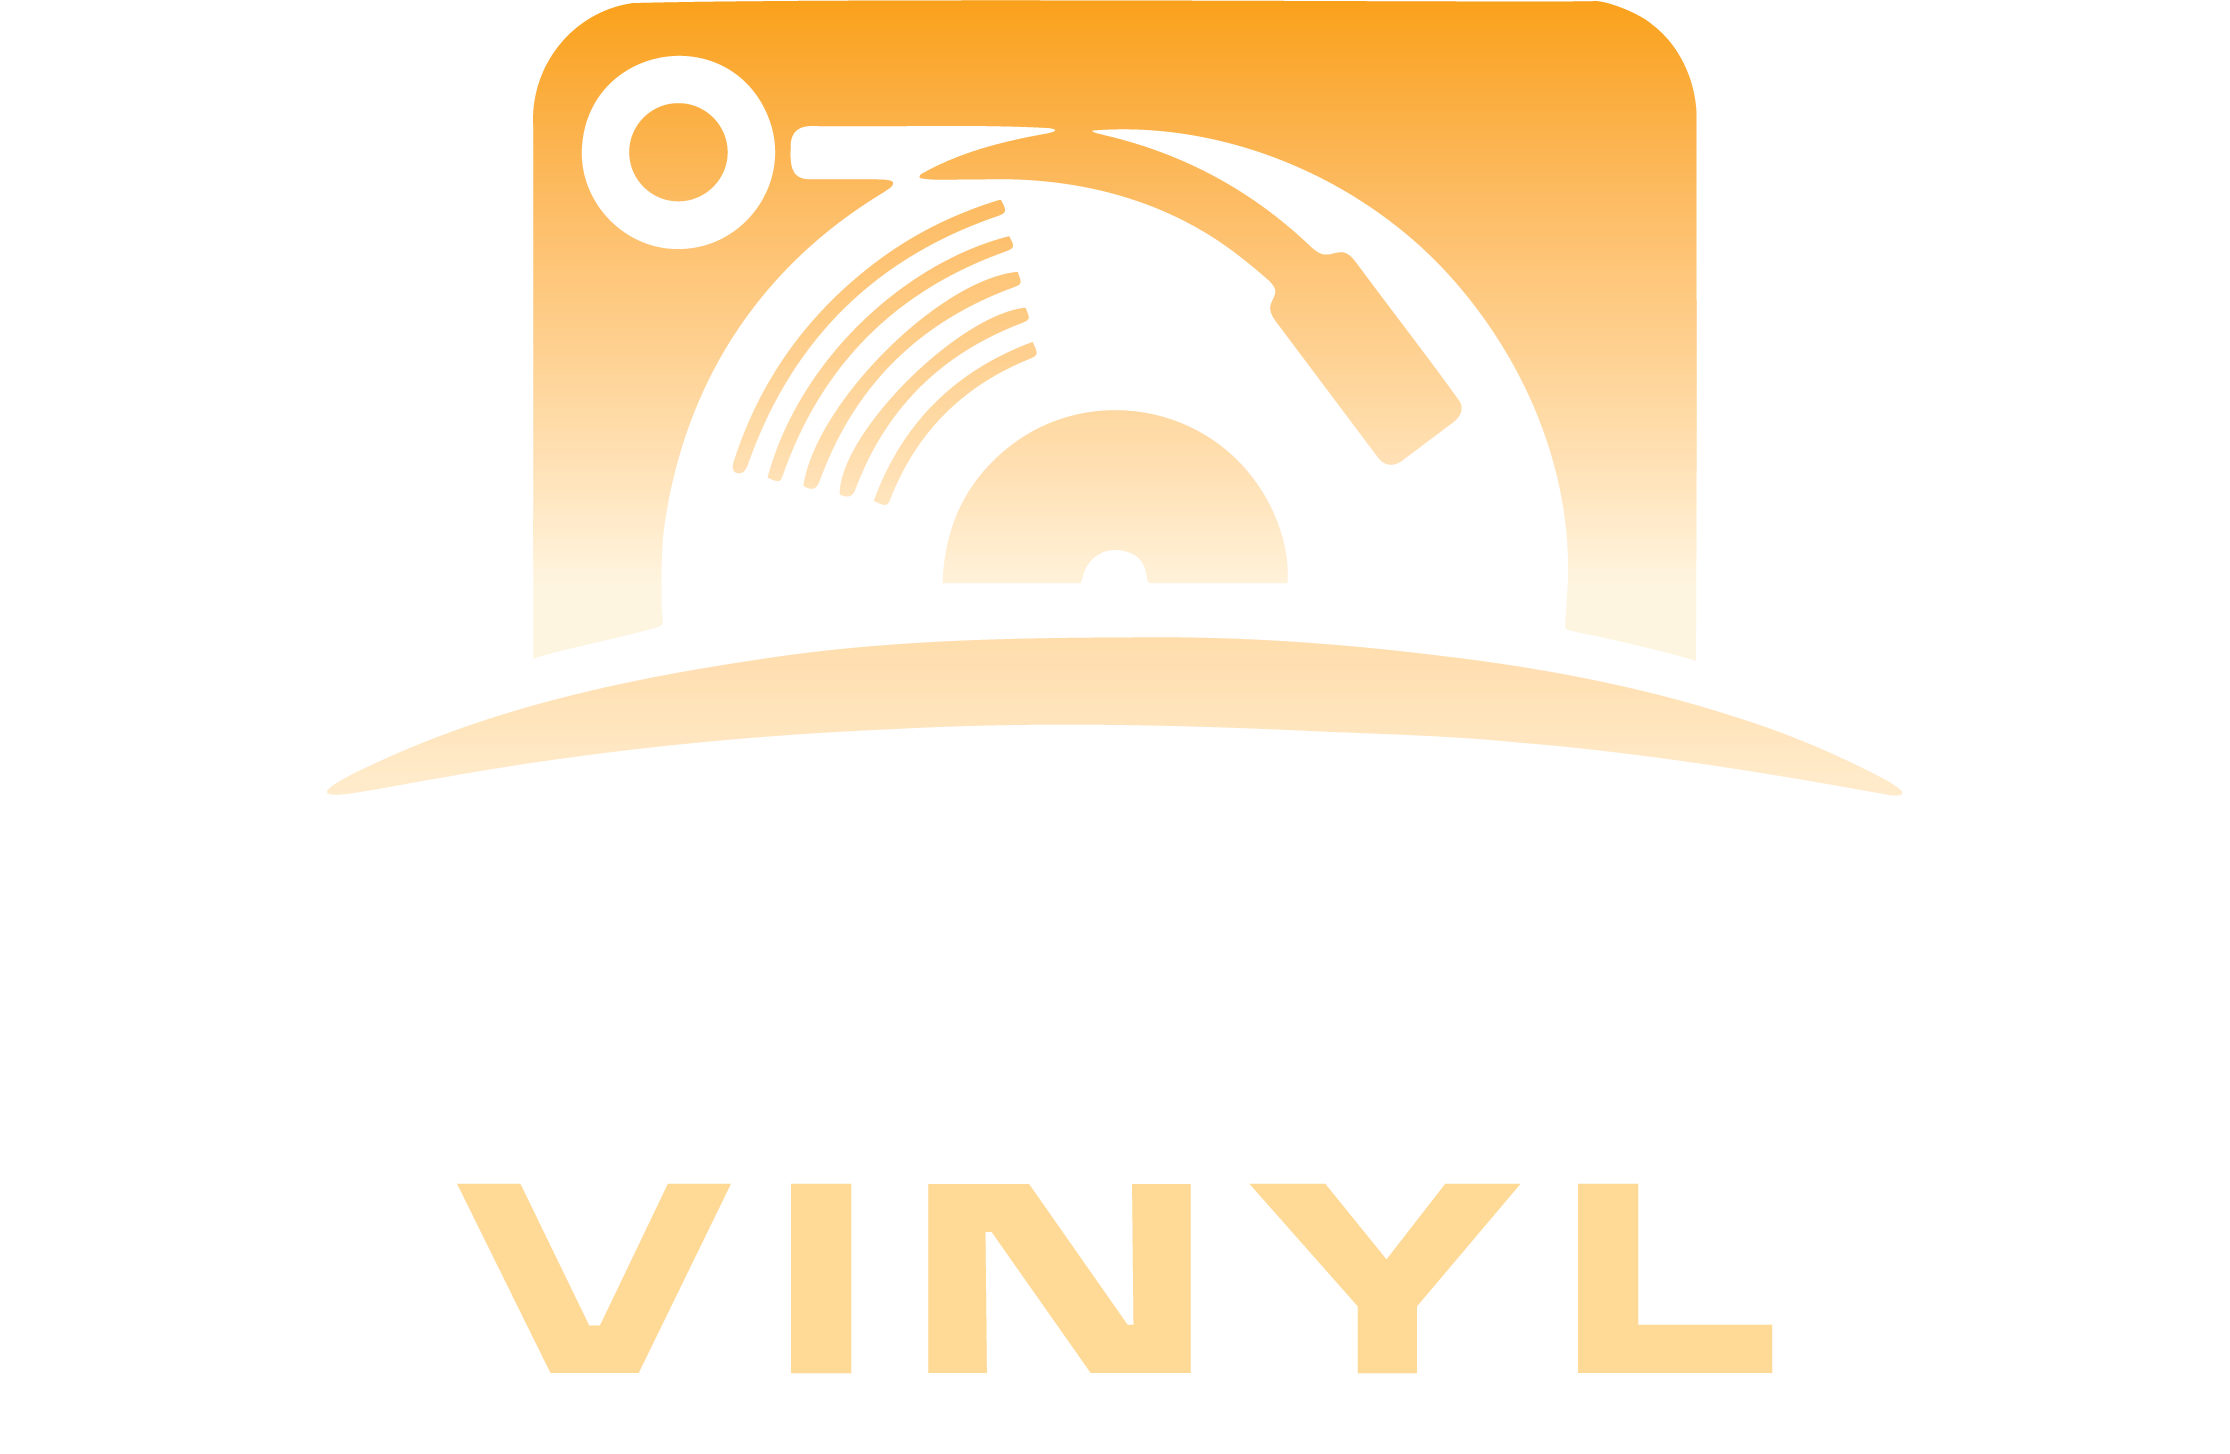 Tuesday Vinyl